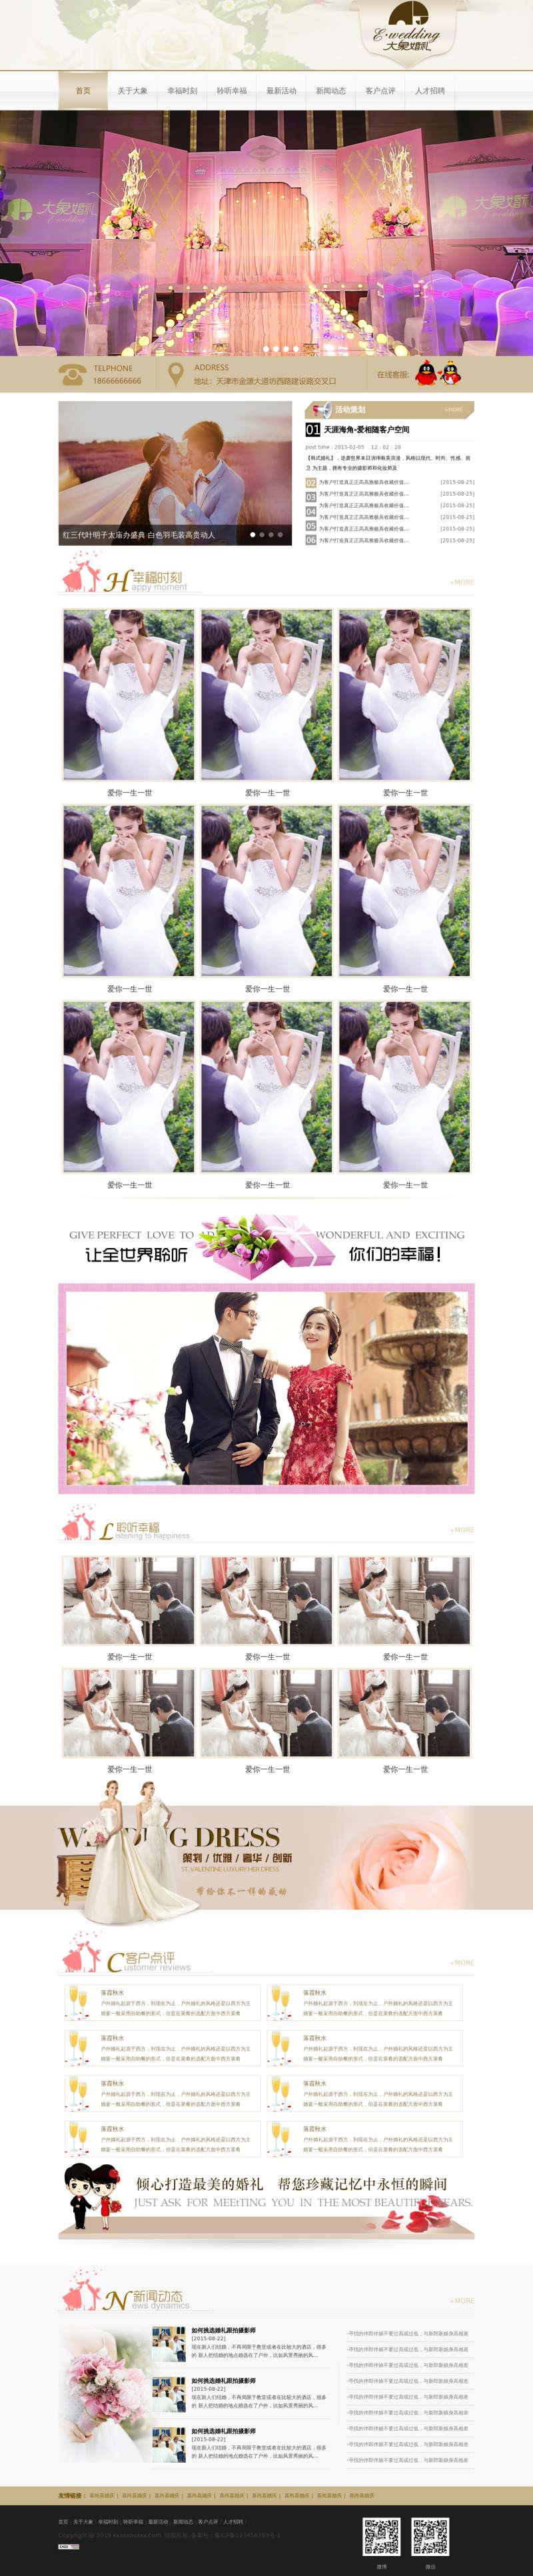 婚庆婚礼策划公司网站模板